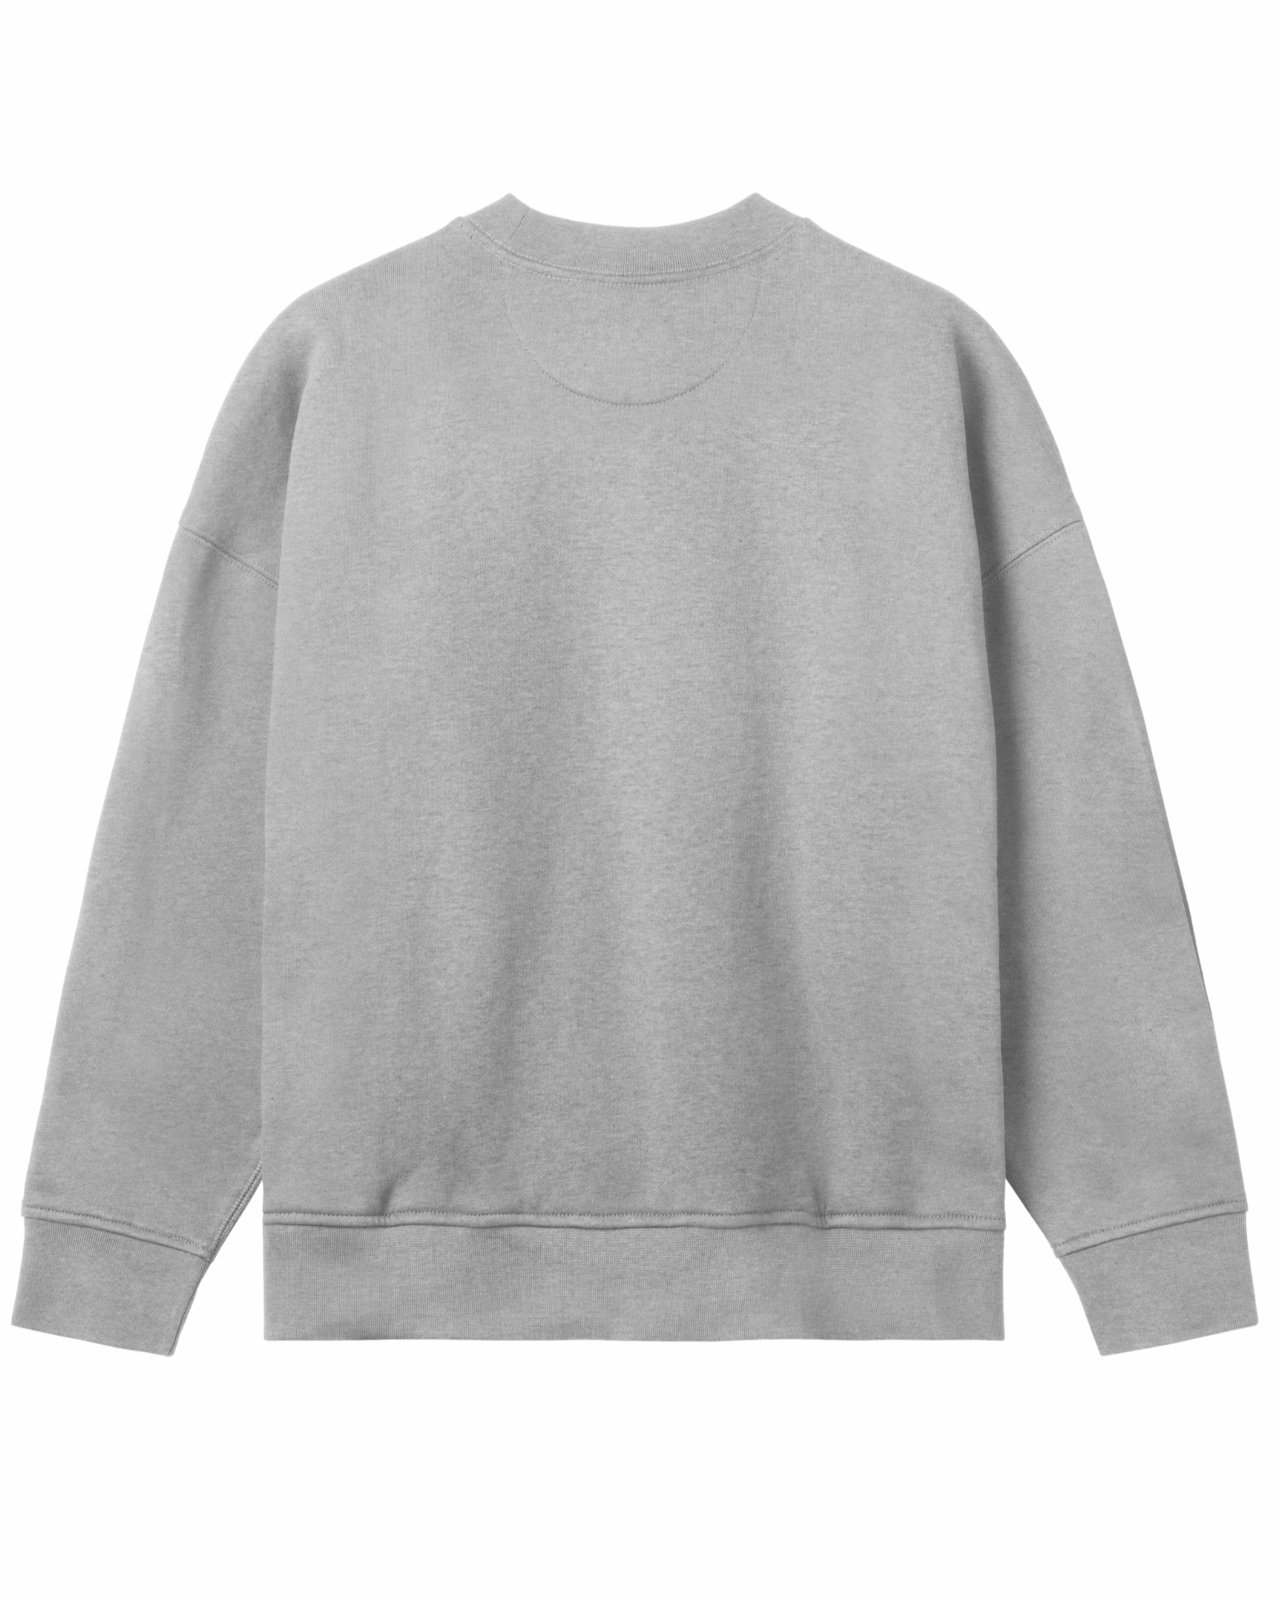 W´s Oversized Surfshop Sweatshirt - Grey Melange - S